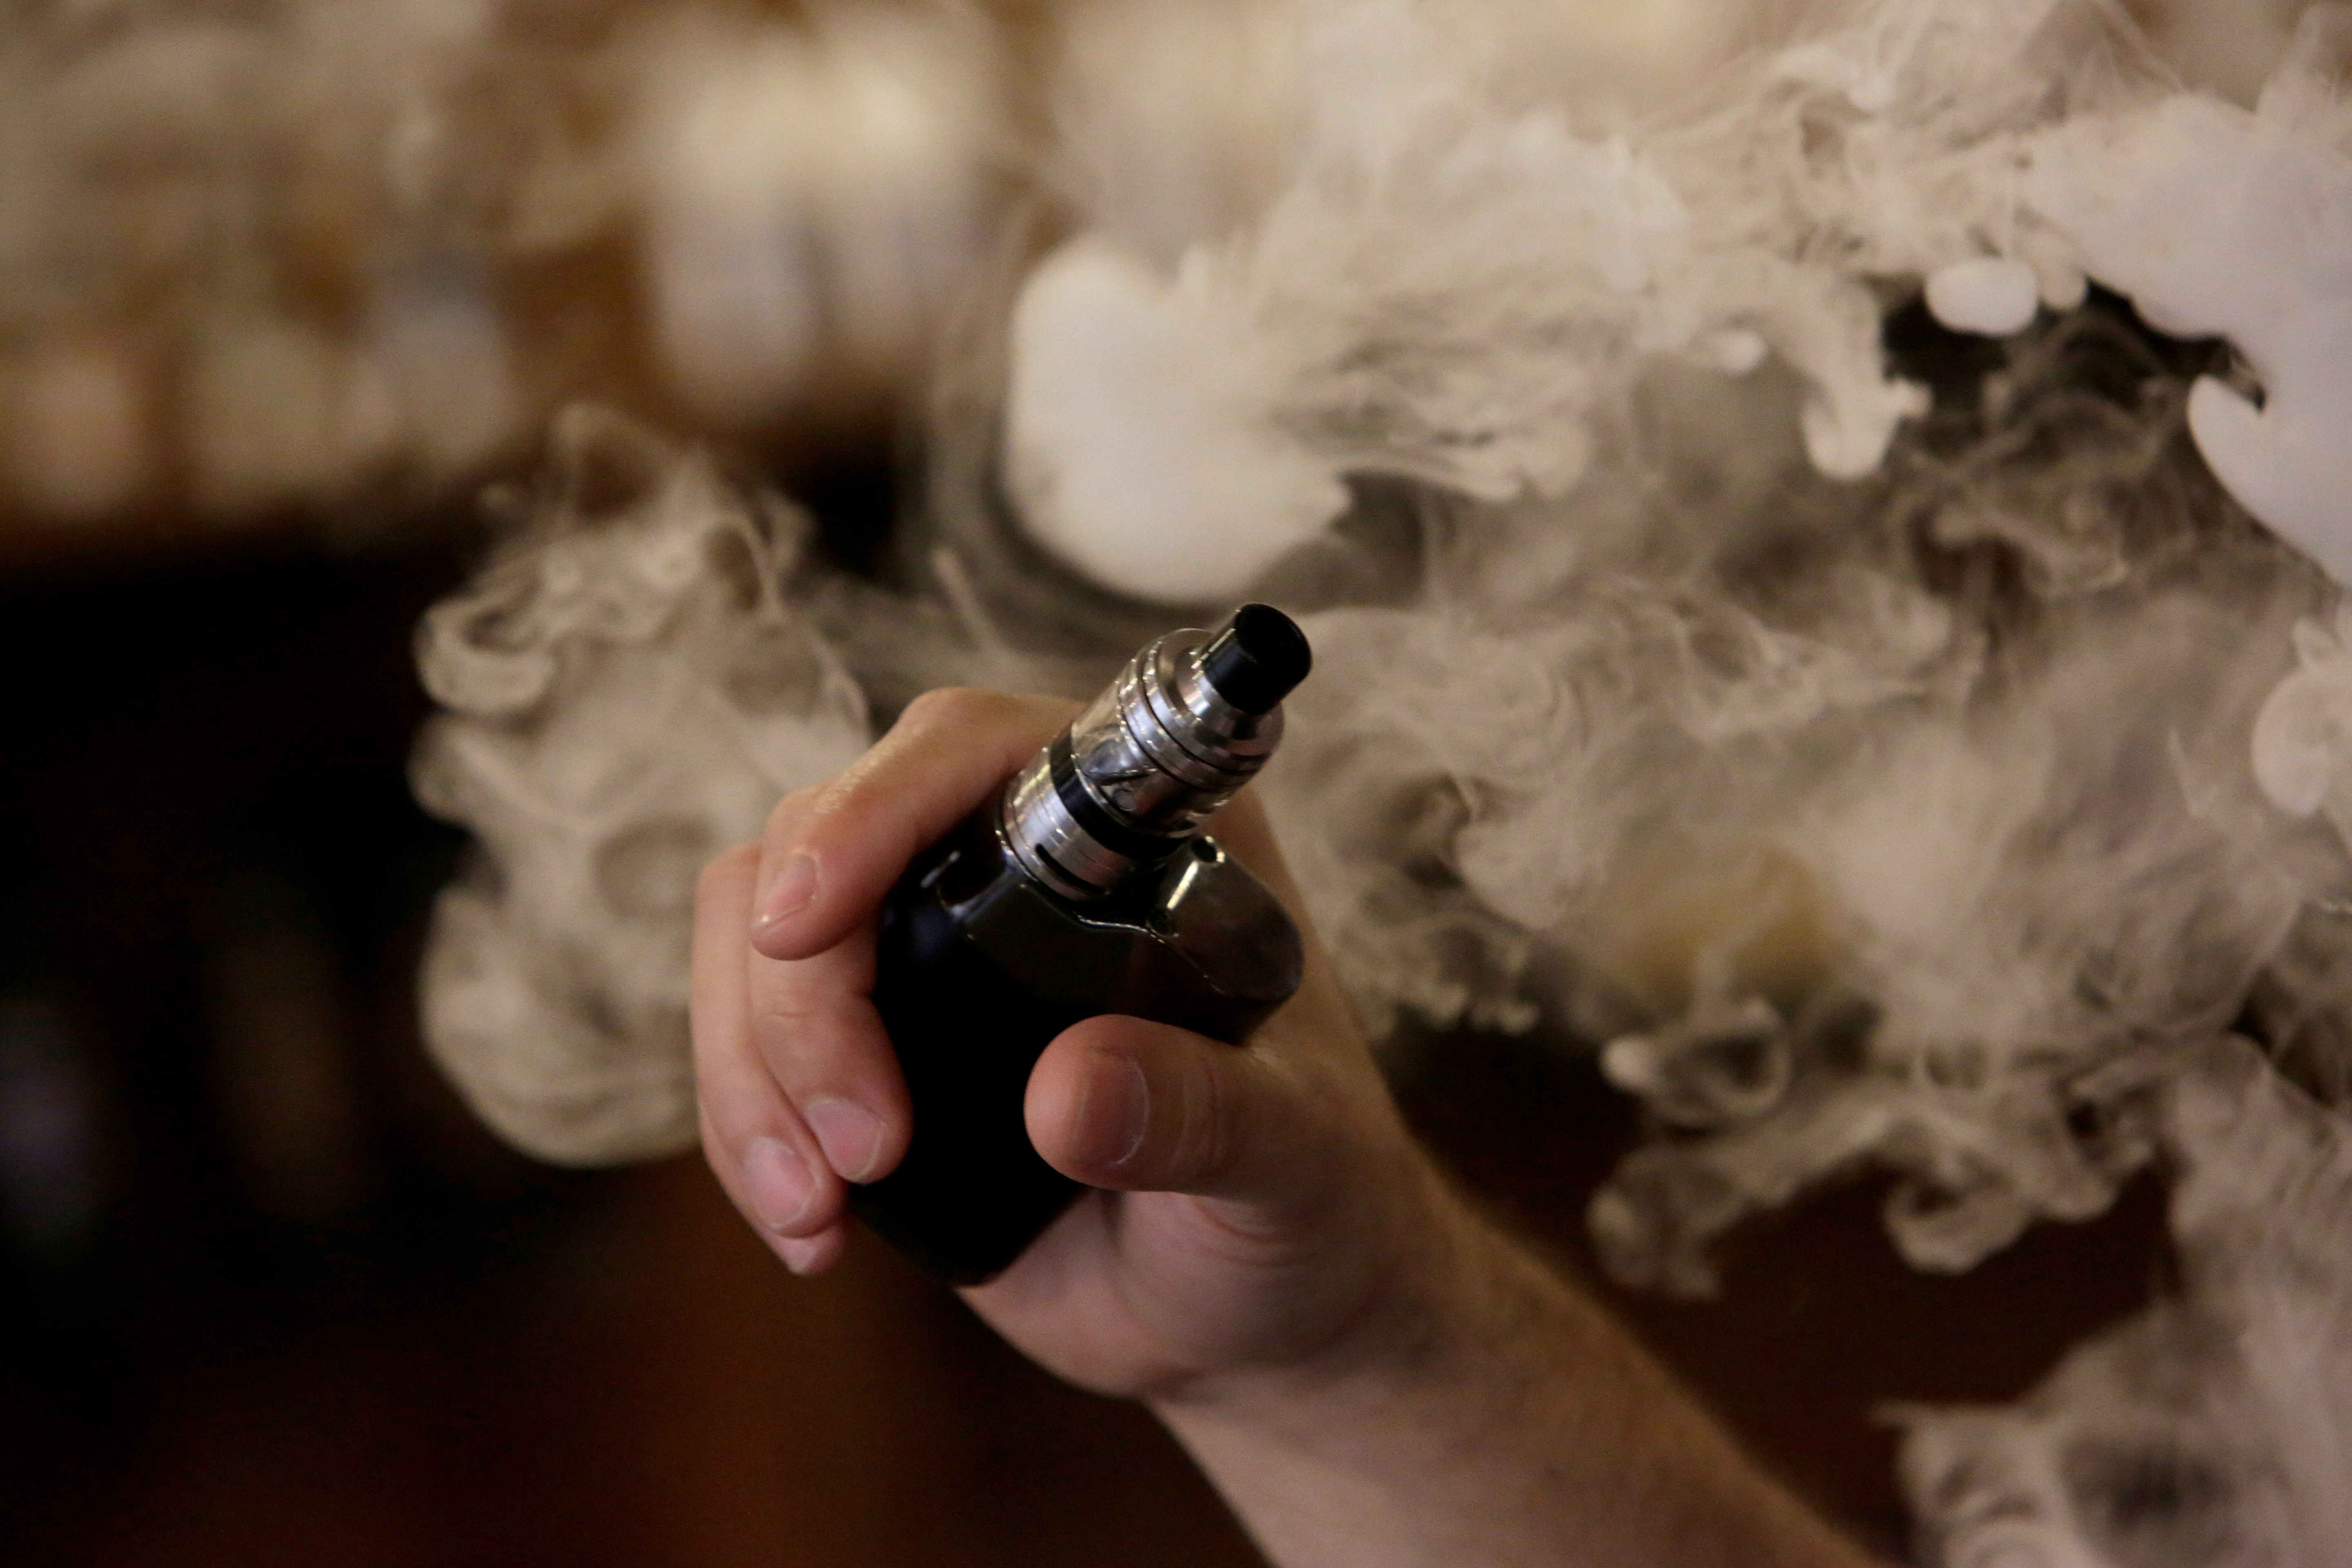 los cartuchos de cannabis para vapear, aceites aromatizados que no dejaban olor en el aire (Reuters)